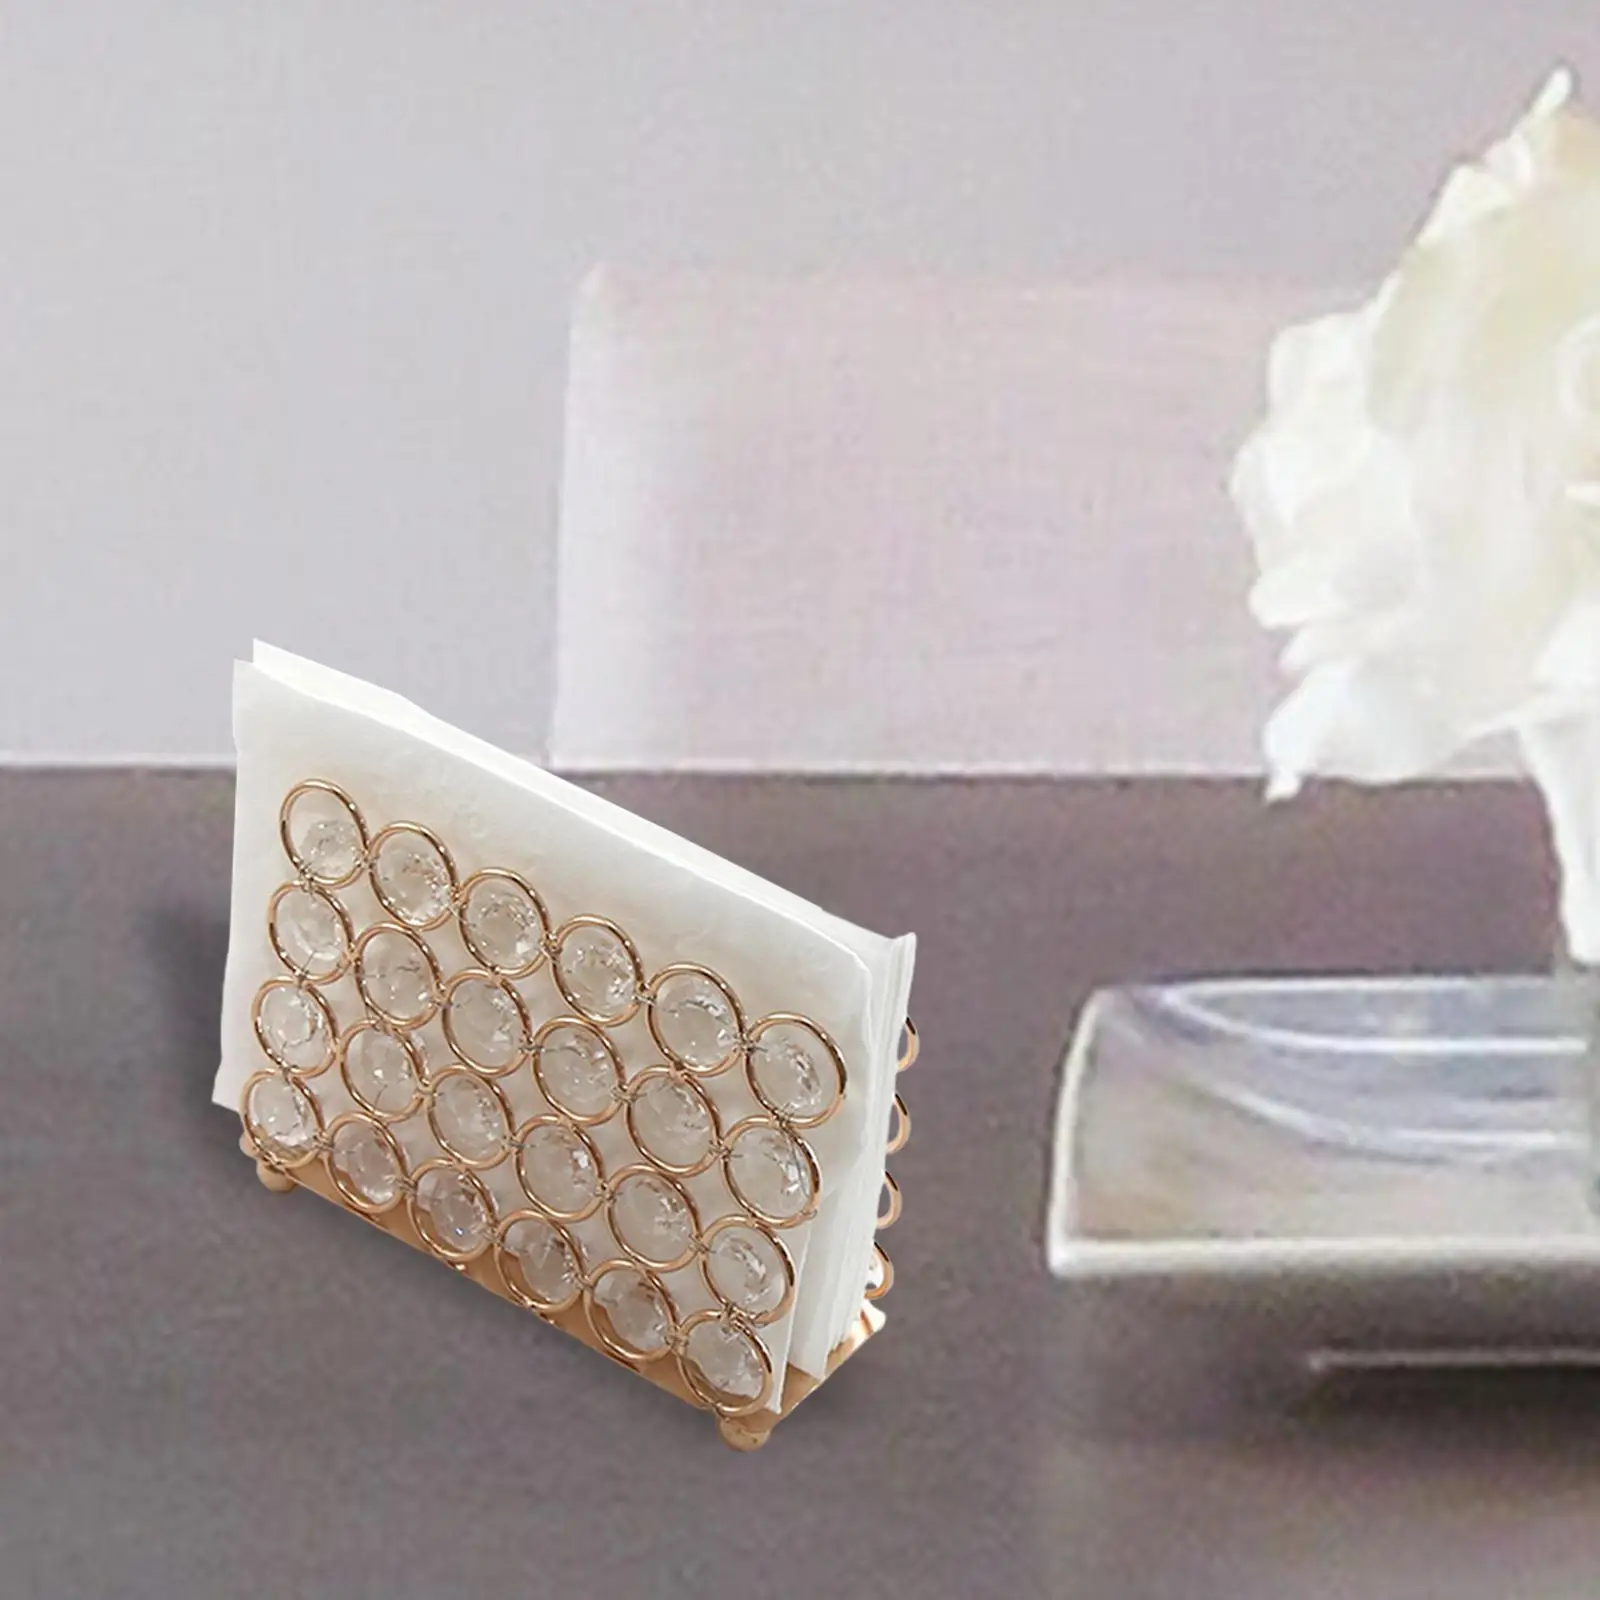 Crystal Napkin Holder, Serviette Holder Napkin Rack Tissue Dispenser for Restaurant Banquet